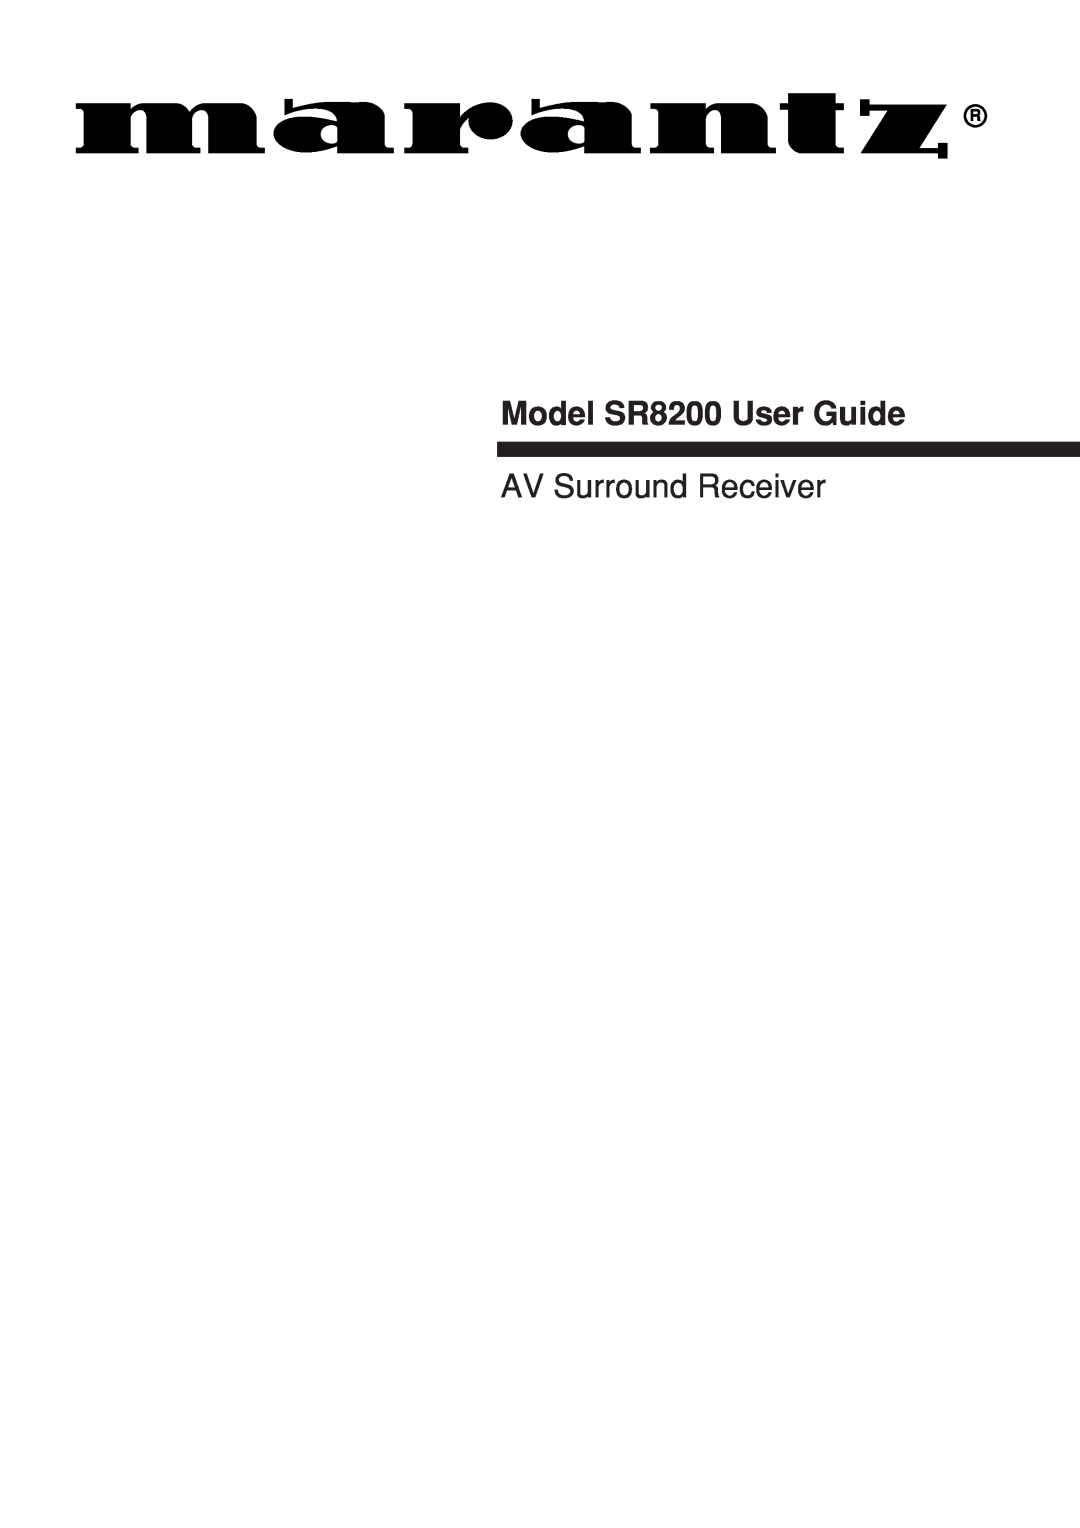 Marantz manual Model SR8200 User Guide, AV Surround Receiver 